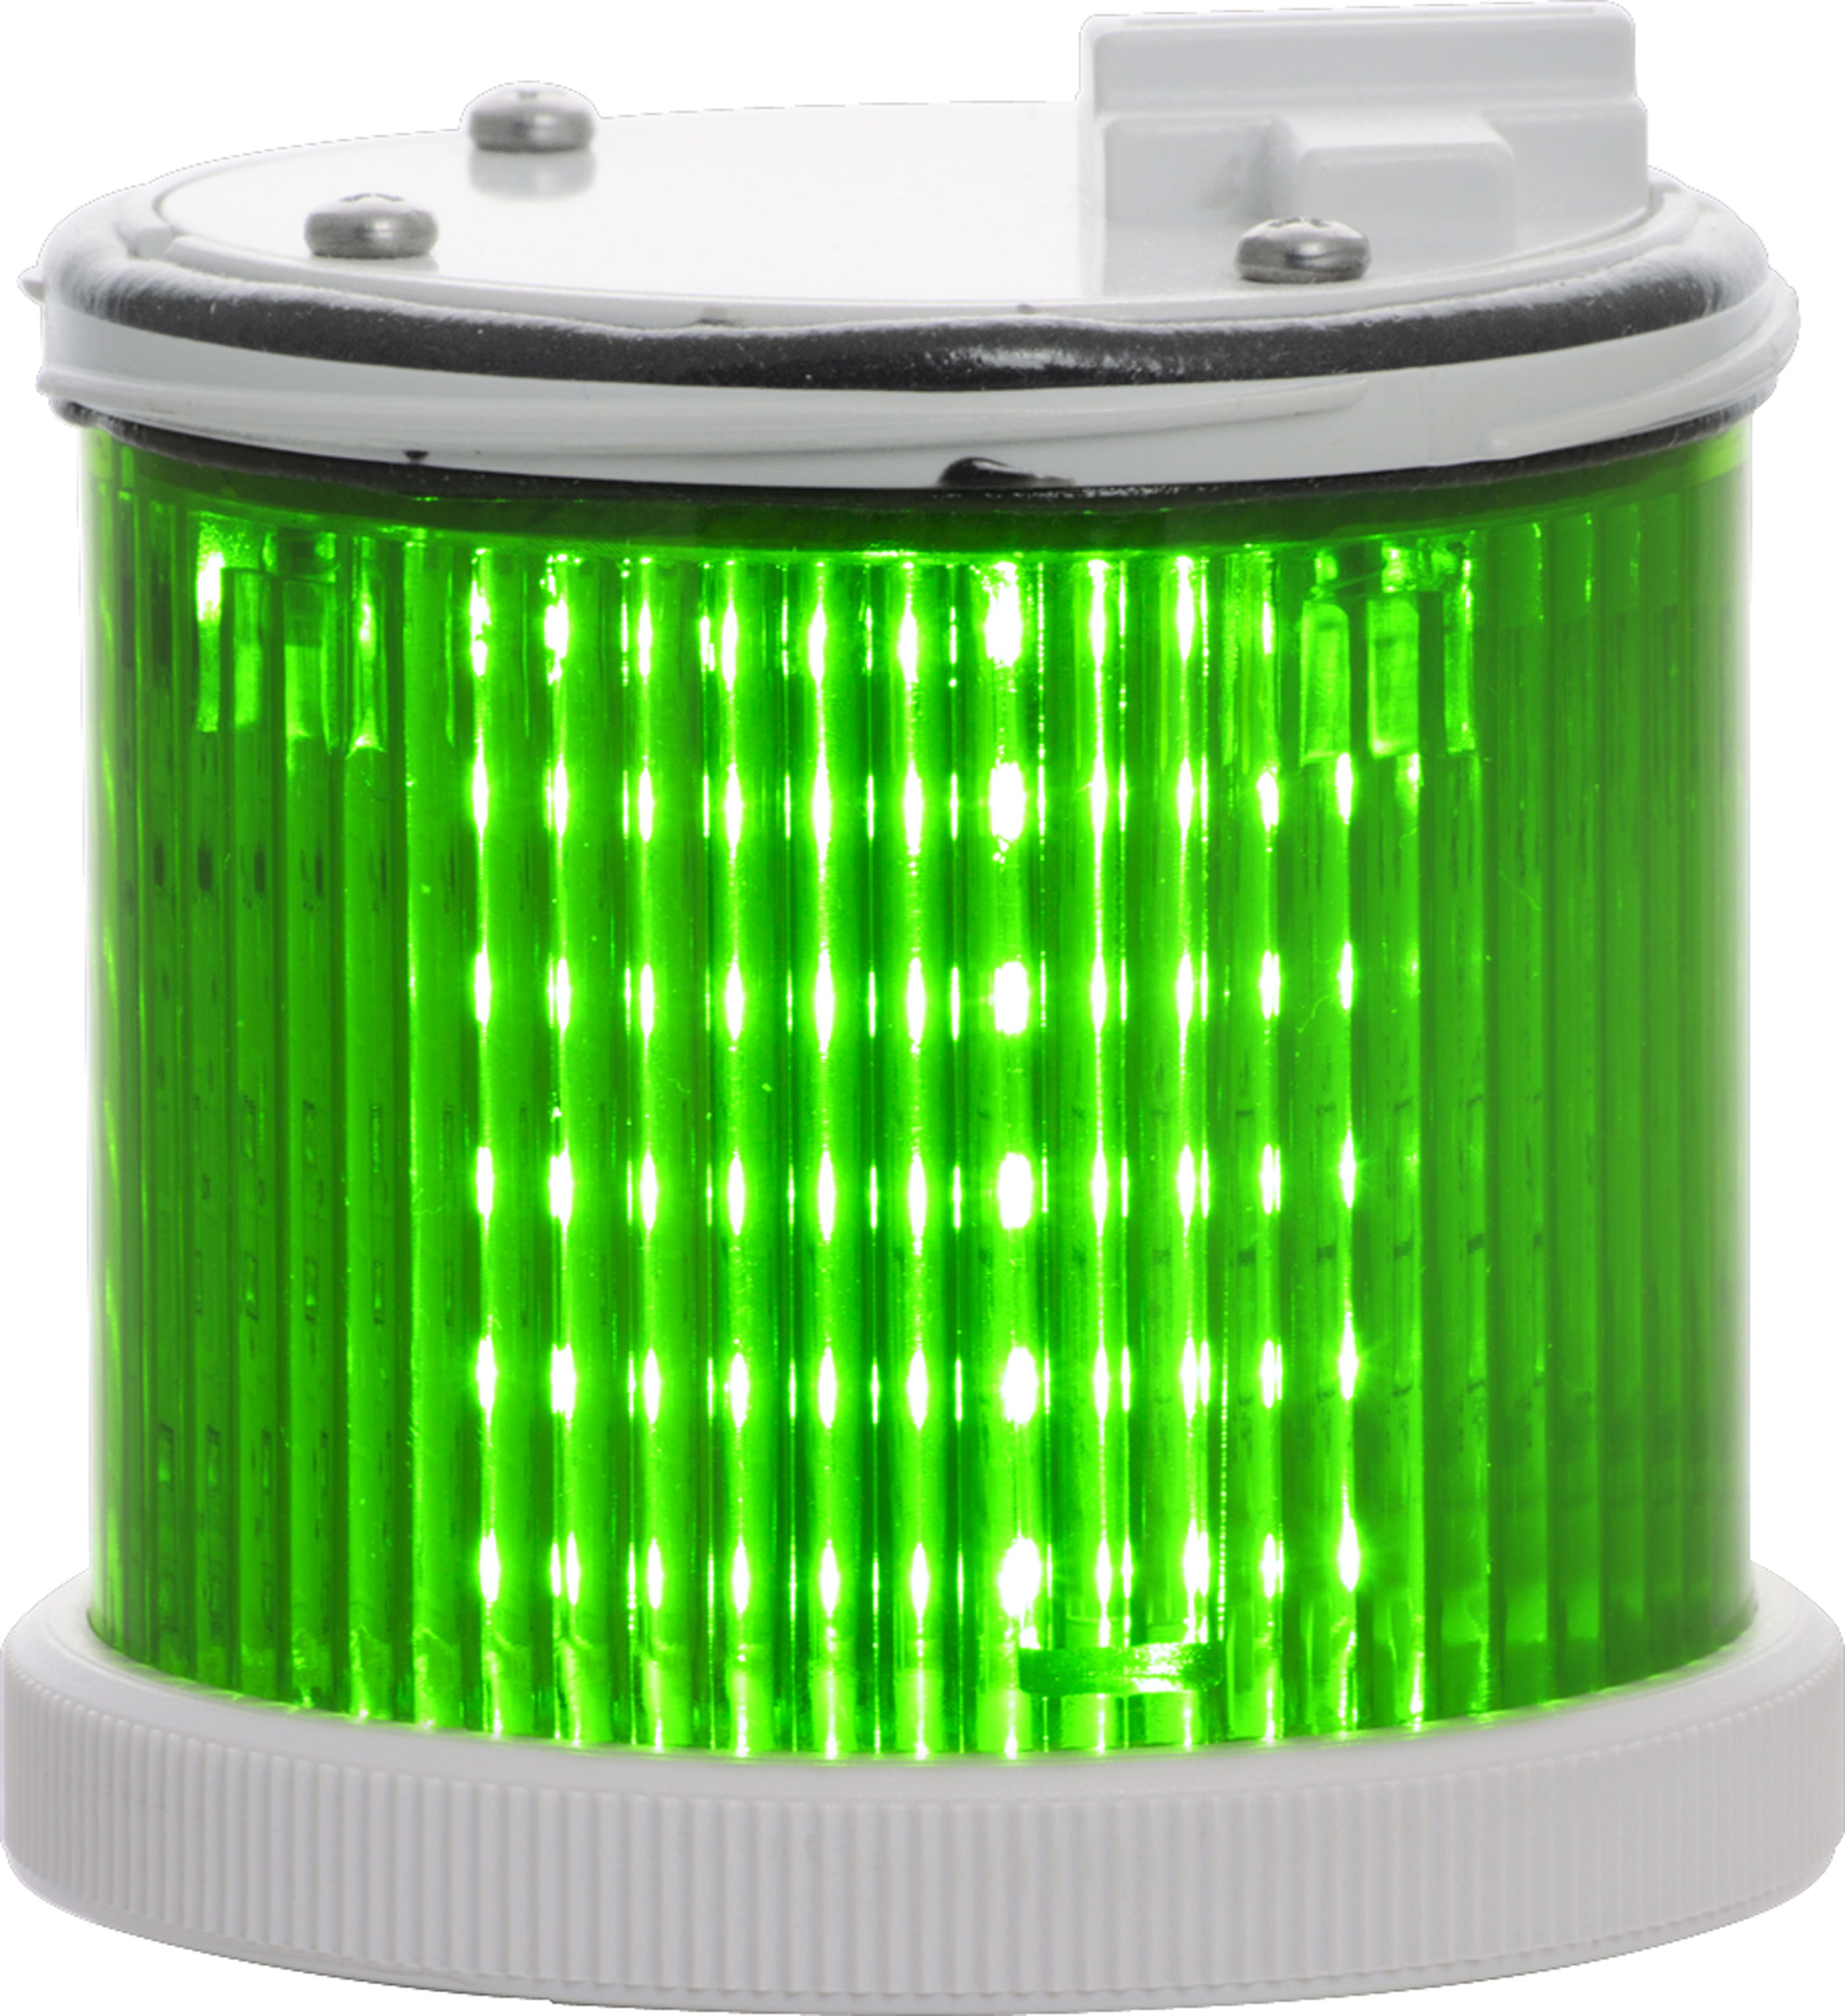 SIRENA - TWS LED : élément lumineux vert - lumière fixe - lentille colorée - V24ACDC